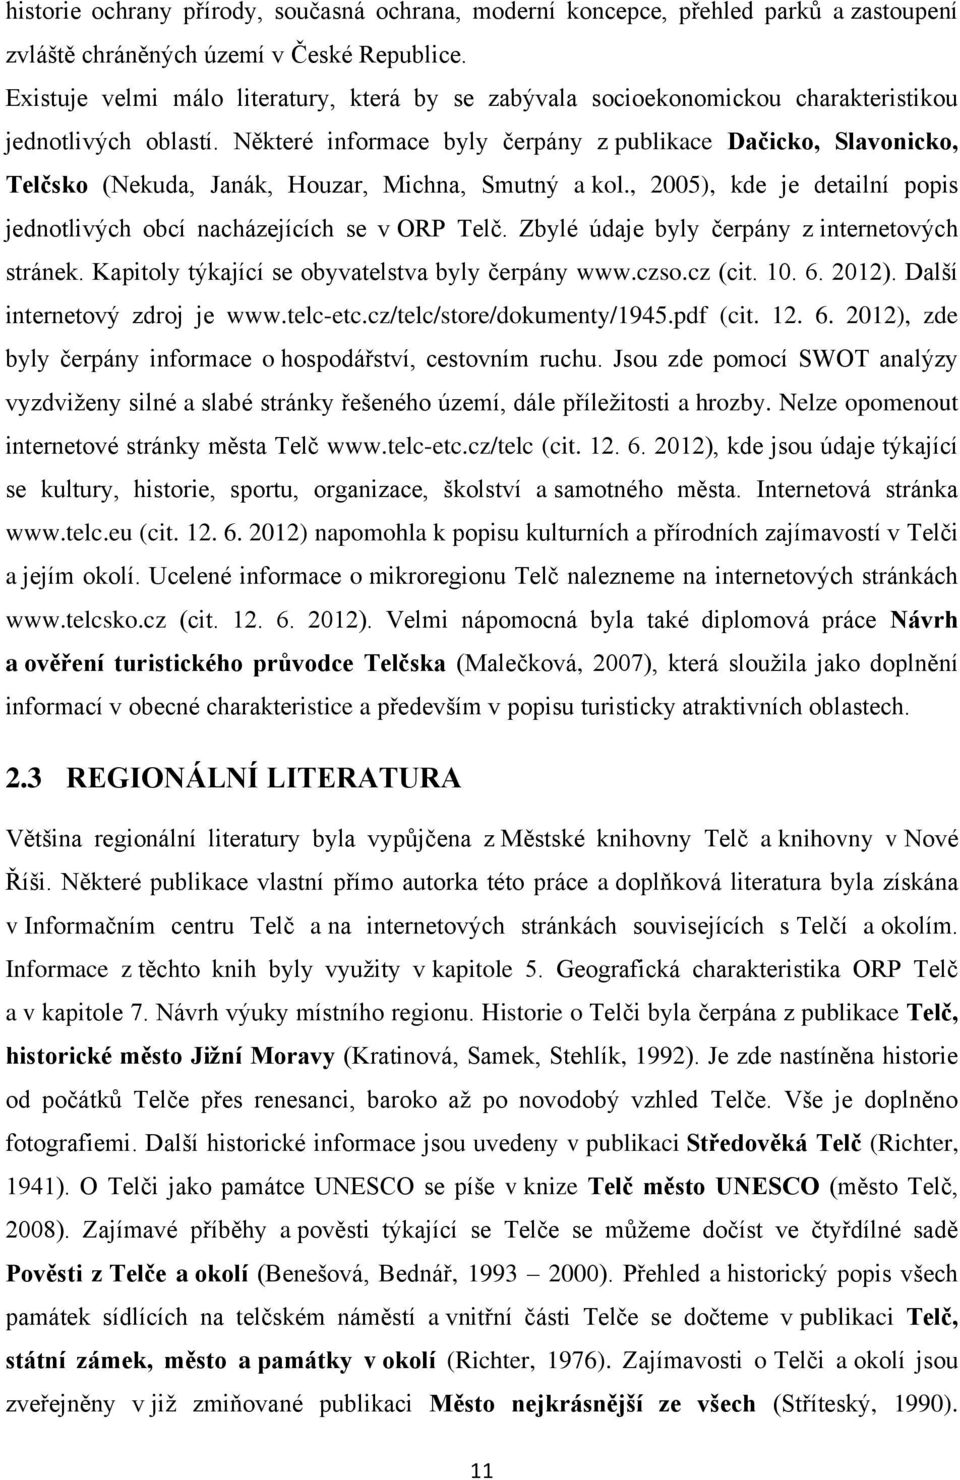 Některé informace byly čerpány z publikace Dačicko, Slavonicko, Telčsko (Nekuda, Janák, Houzar, Michna, Smutný a kol., 2005), kde je detailní popis jednotlivých obcí nacházejících se v ORP Telč.